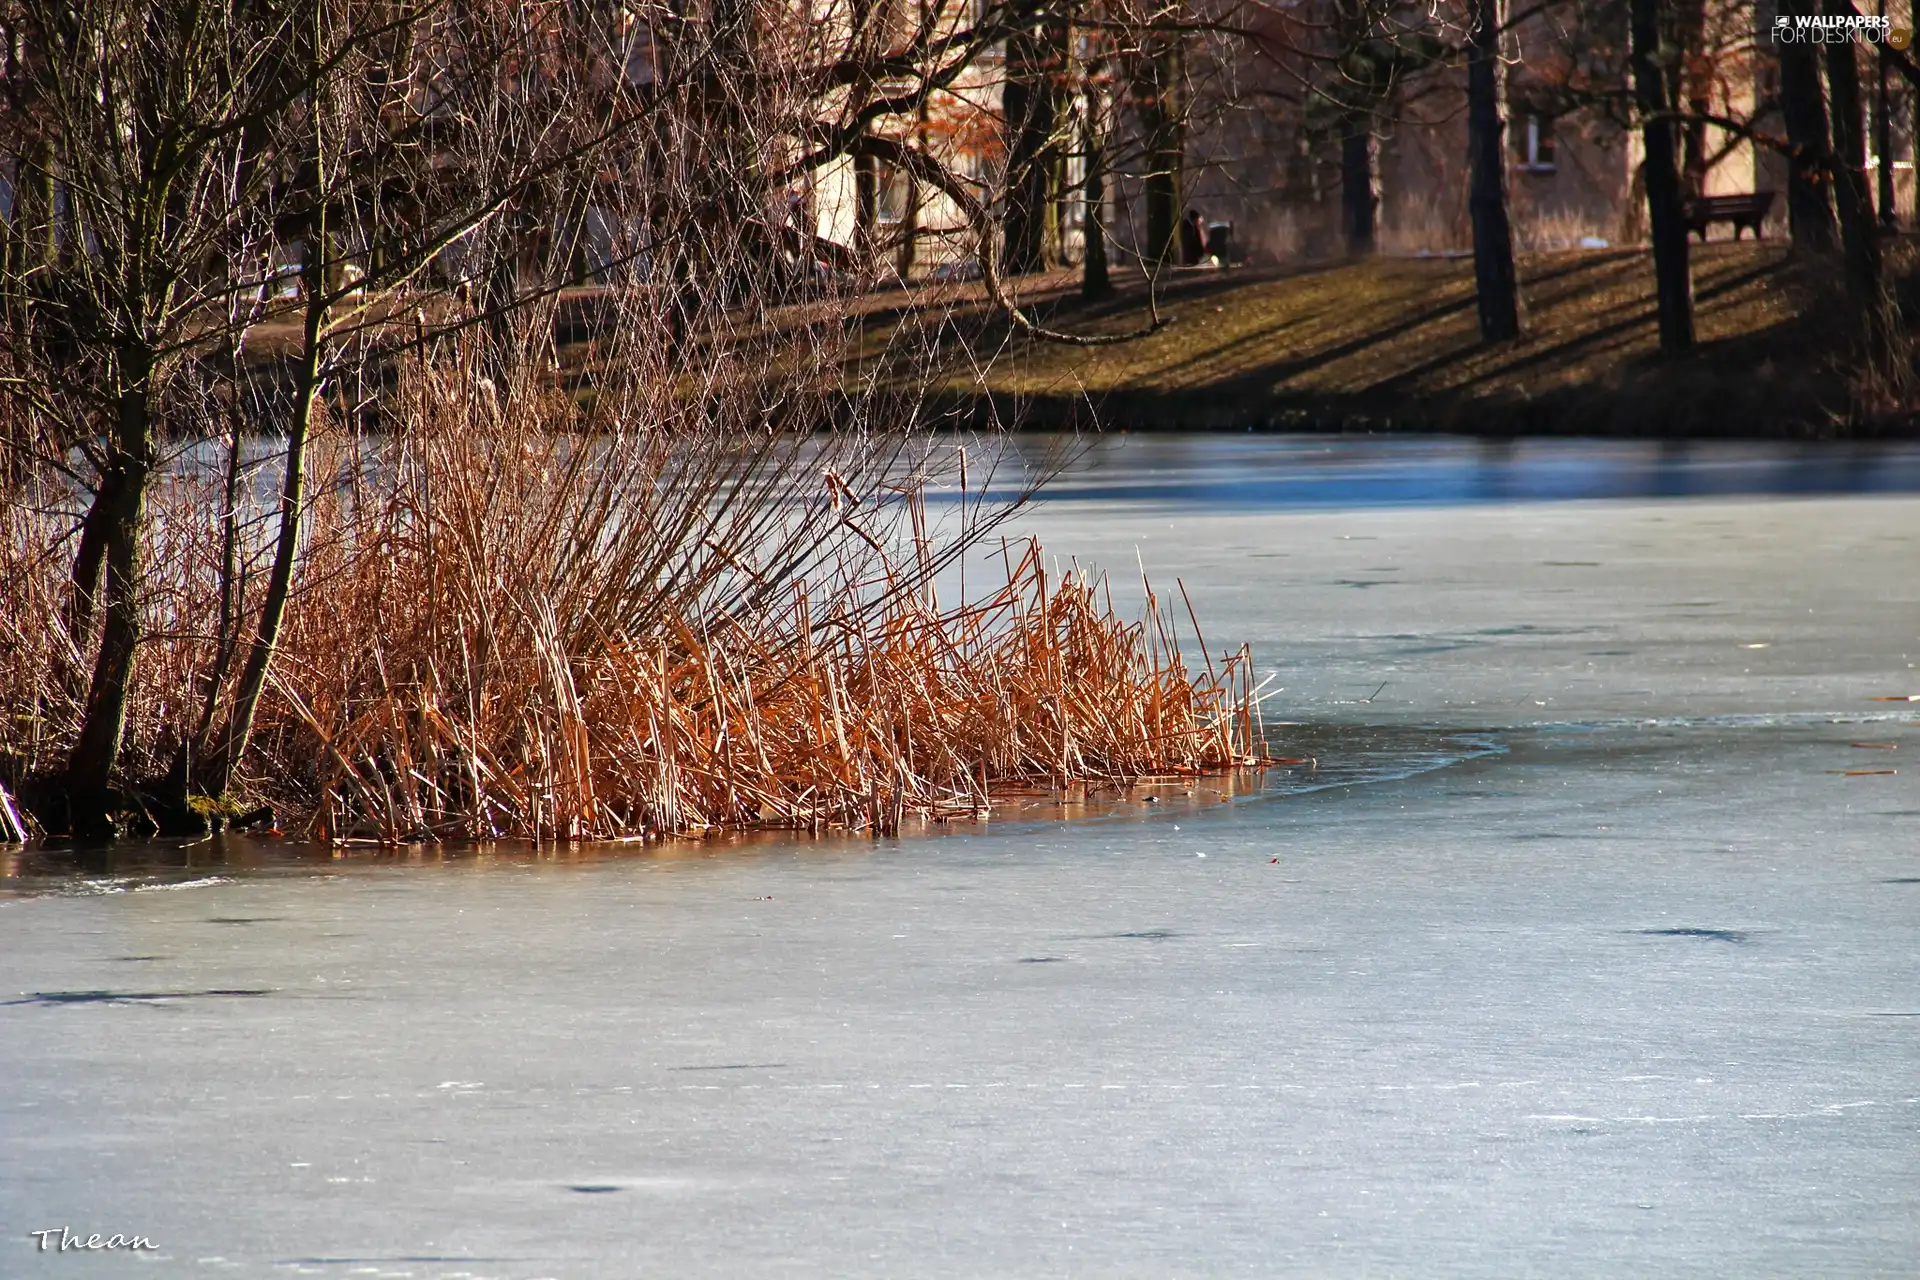 Cane, frozen, lake